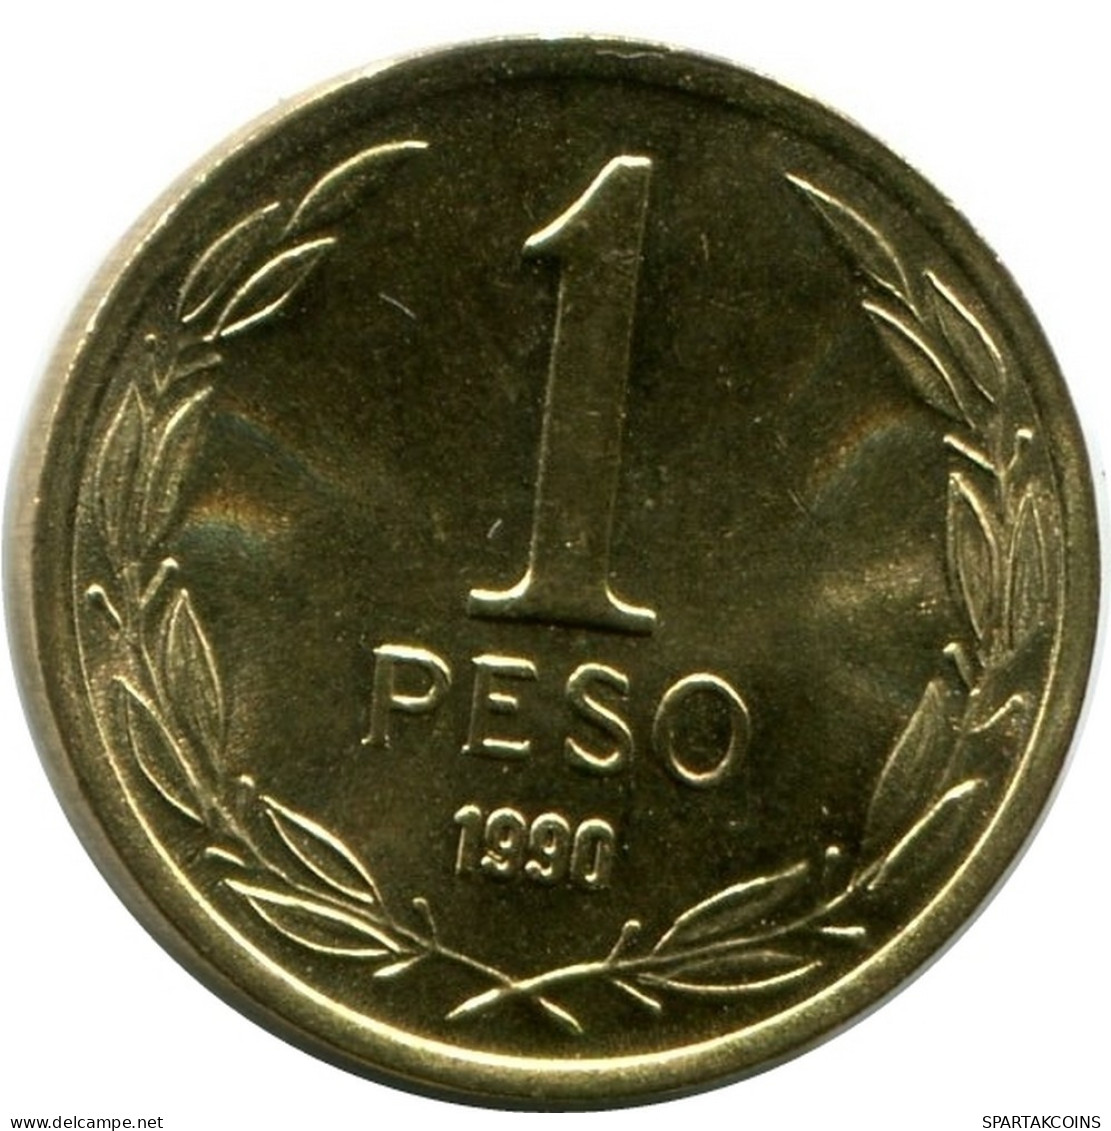 1 PESO 1990 CHILE UNC Münze #M10071.D.A - Cile